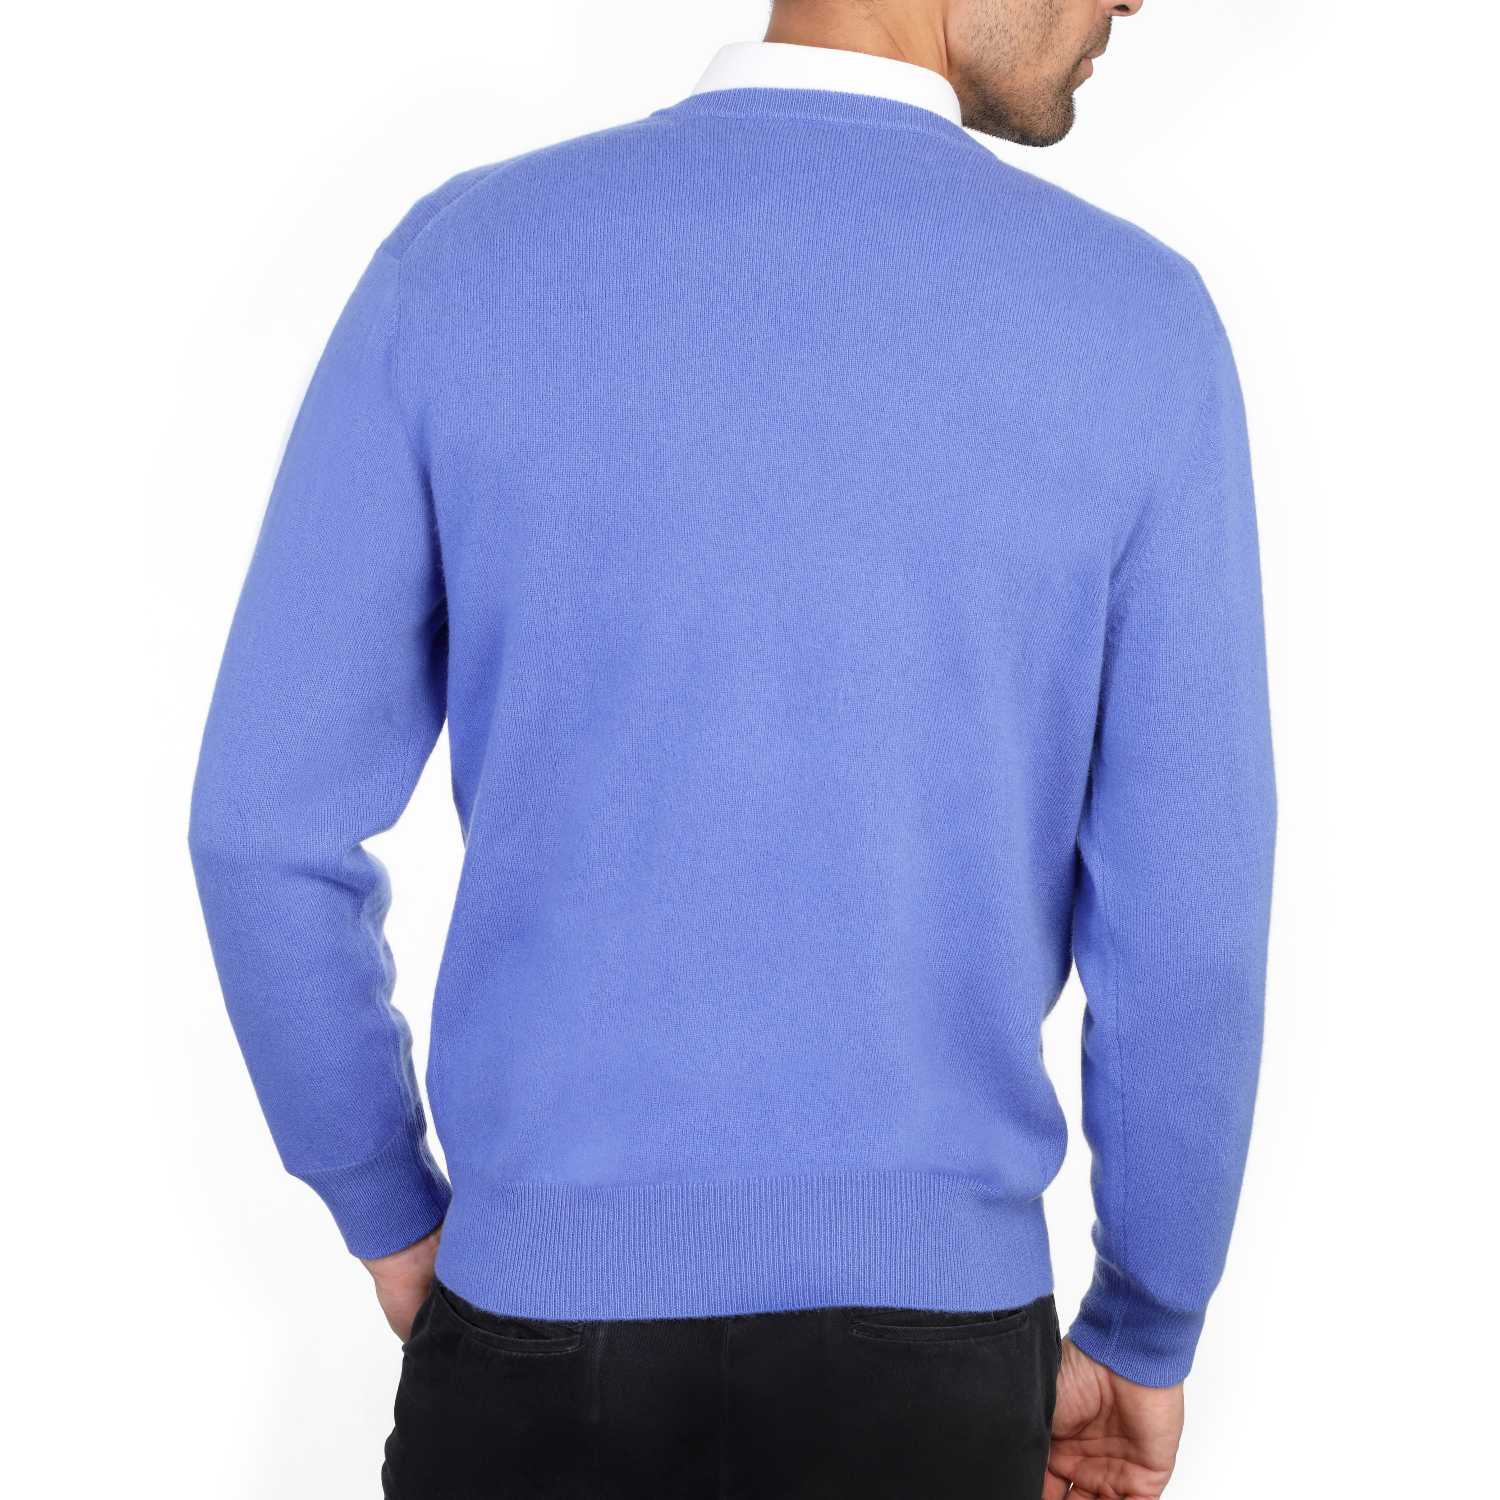 Mens cashmere v neck jumpers - cornflower blue back view